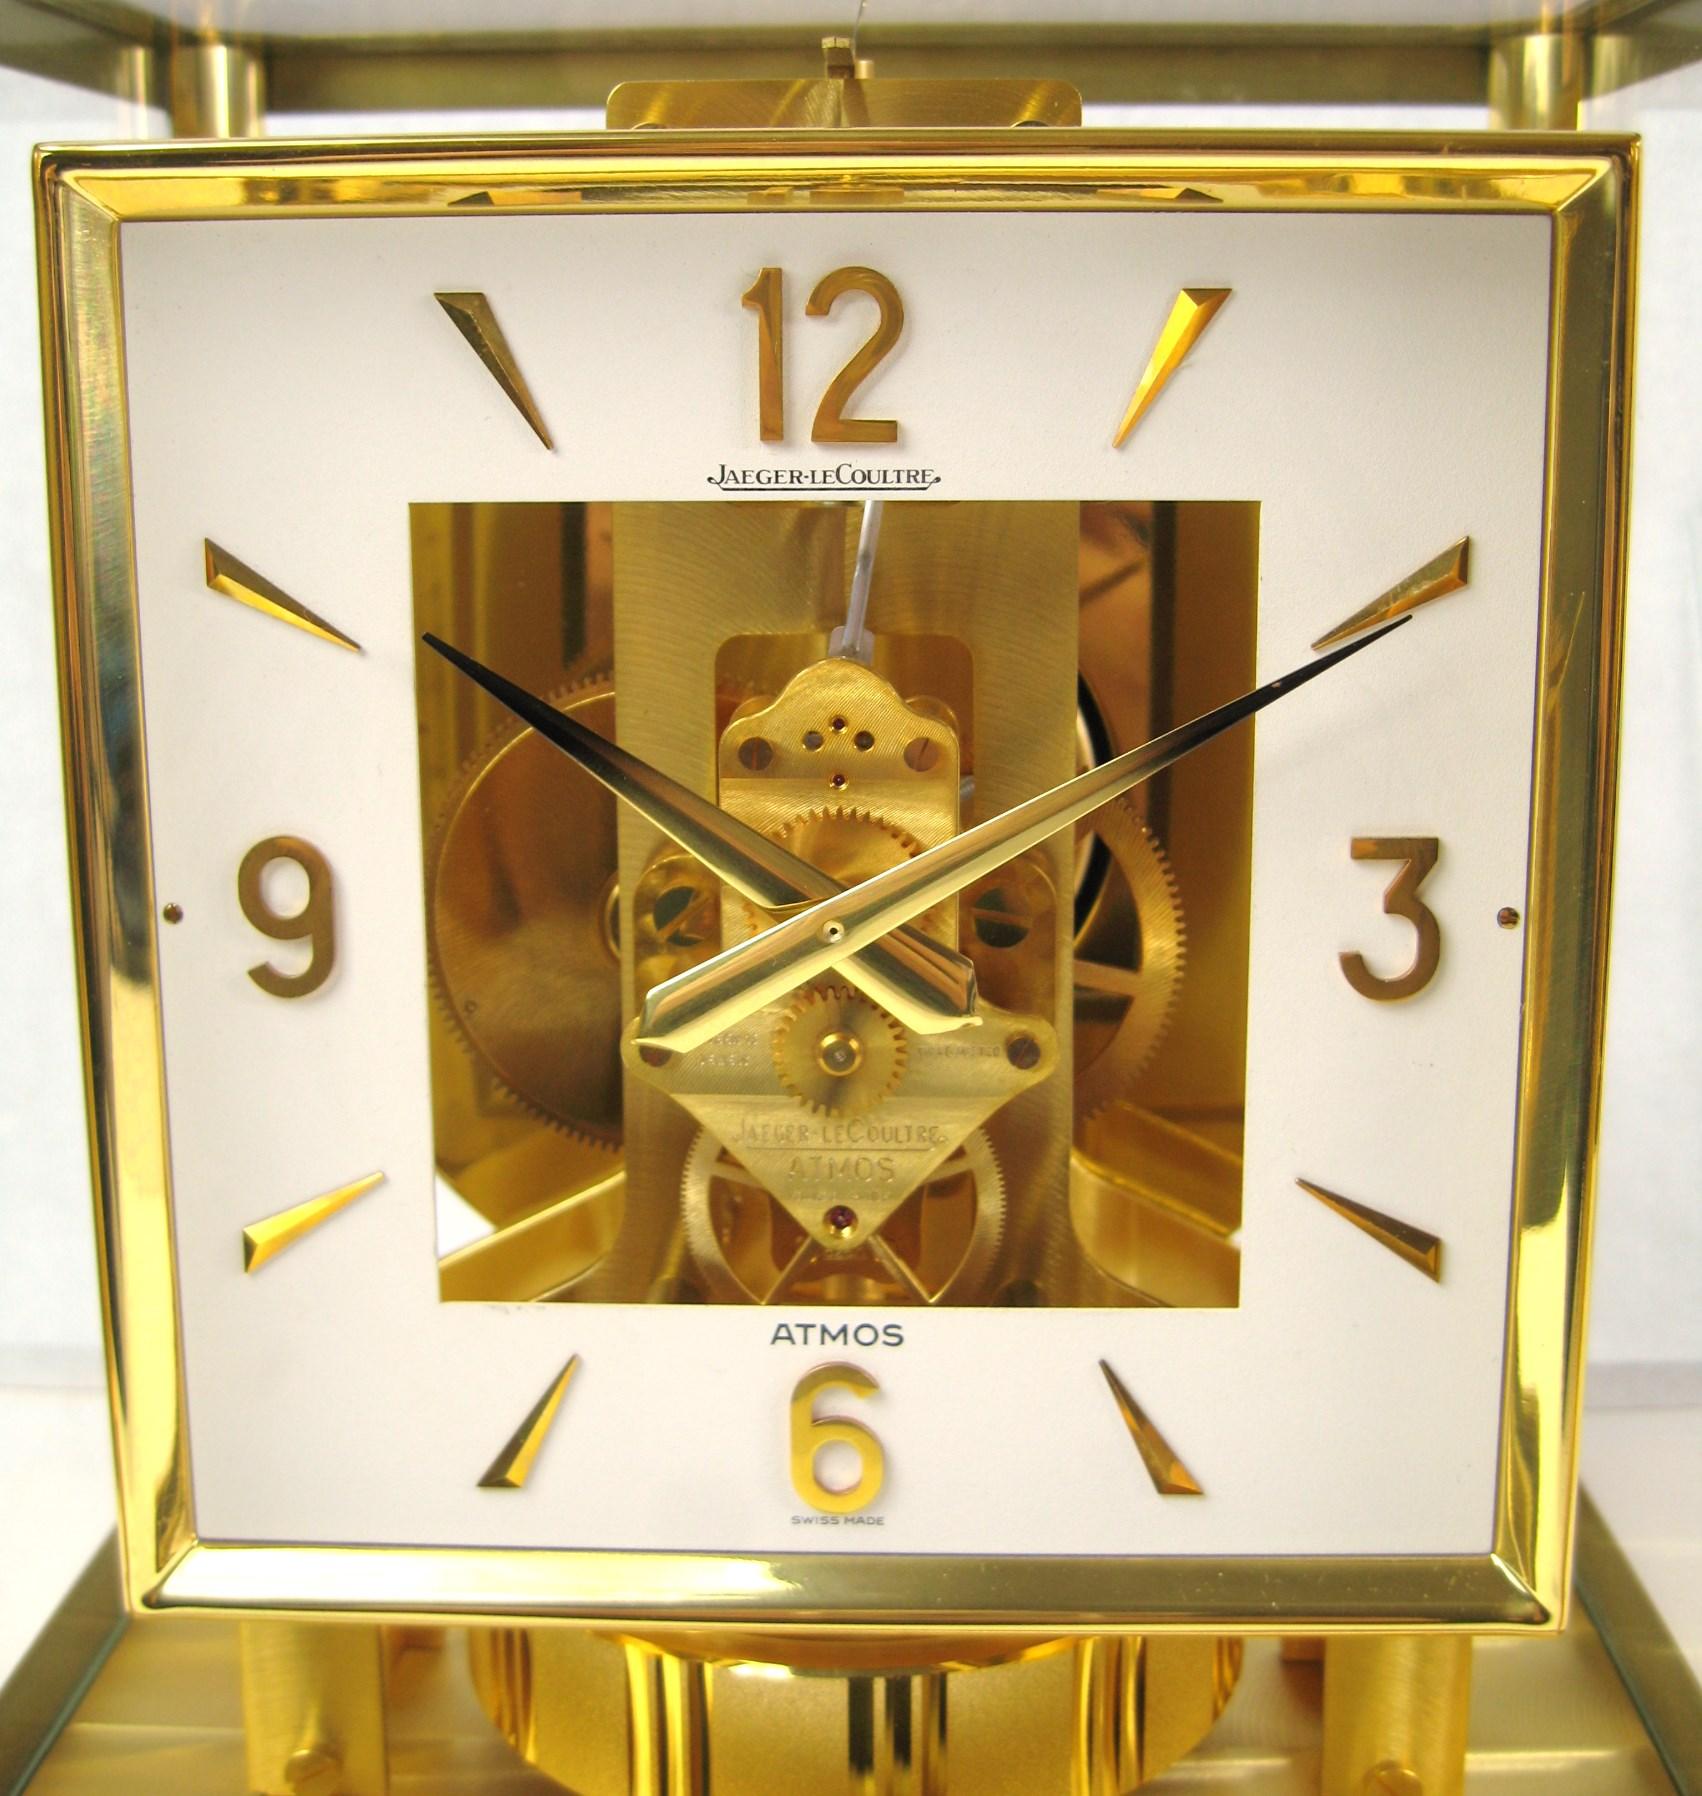 Jaeger-LeCoultre Atmos Clock
Horloge de table Elle fonctionne correctement. mouvement perpétuel, calibre 528-8
Le cadran est carré. Matériaux : laiton plaqué or et verre.
La patine est dorée et présente une légère usure naturelle. L'état général est